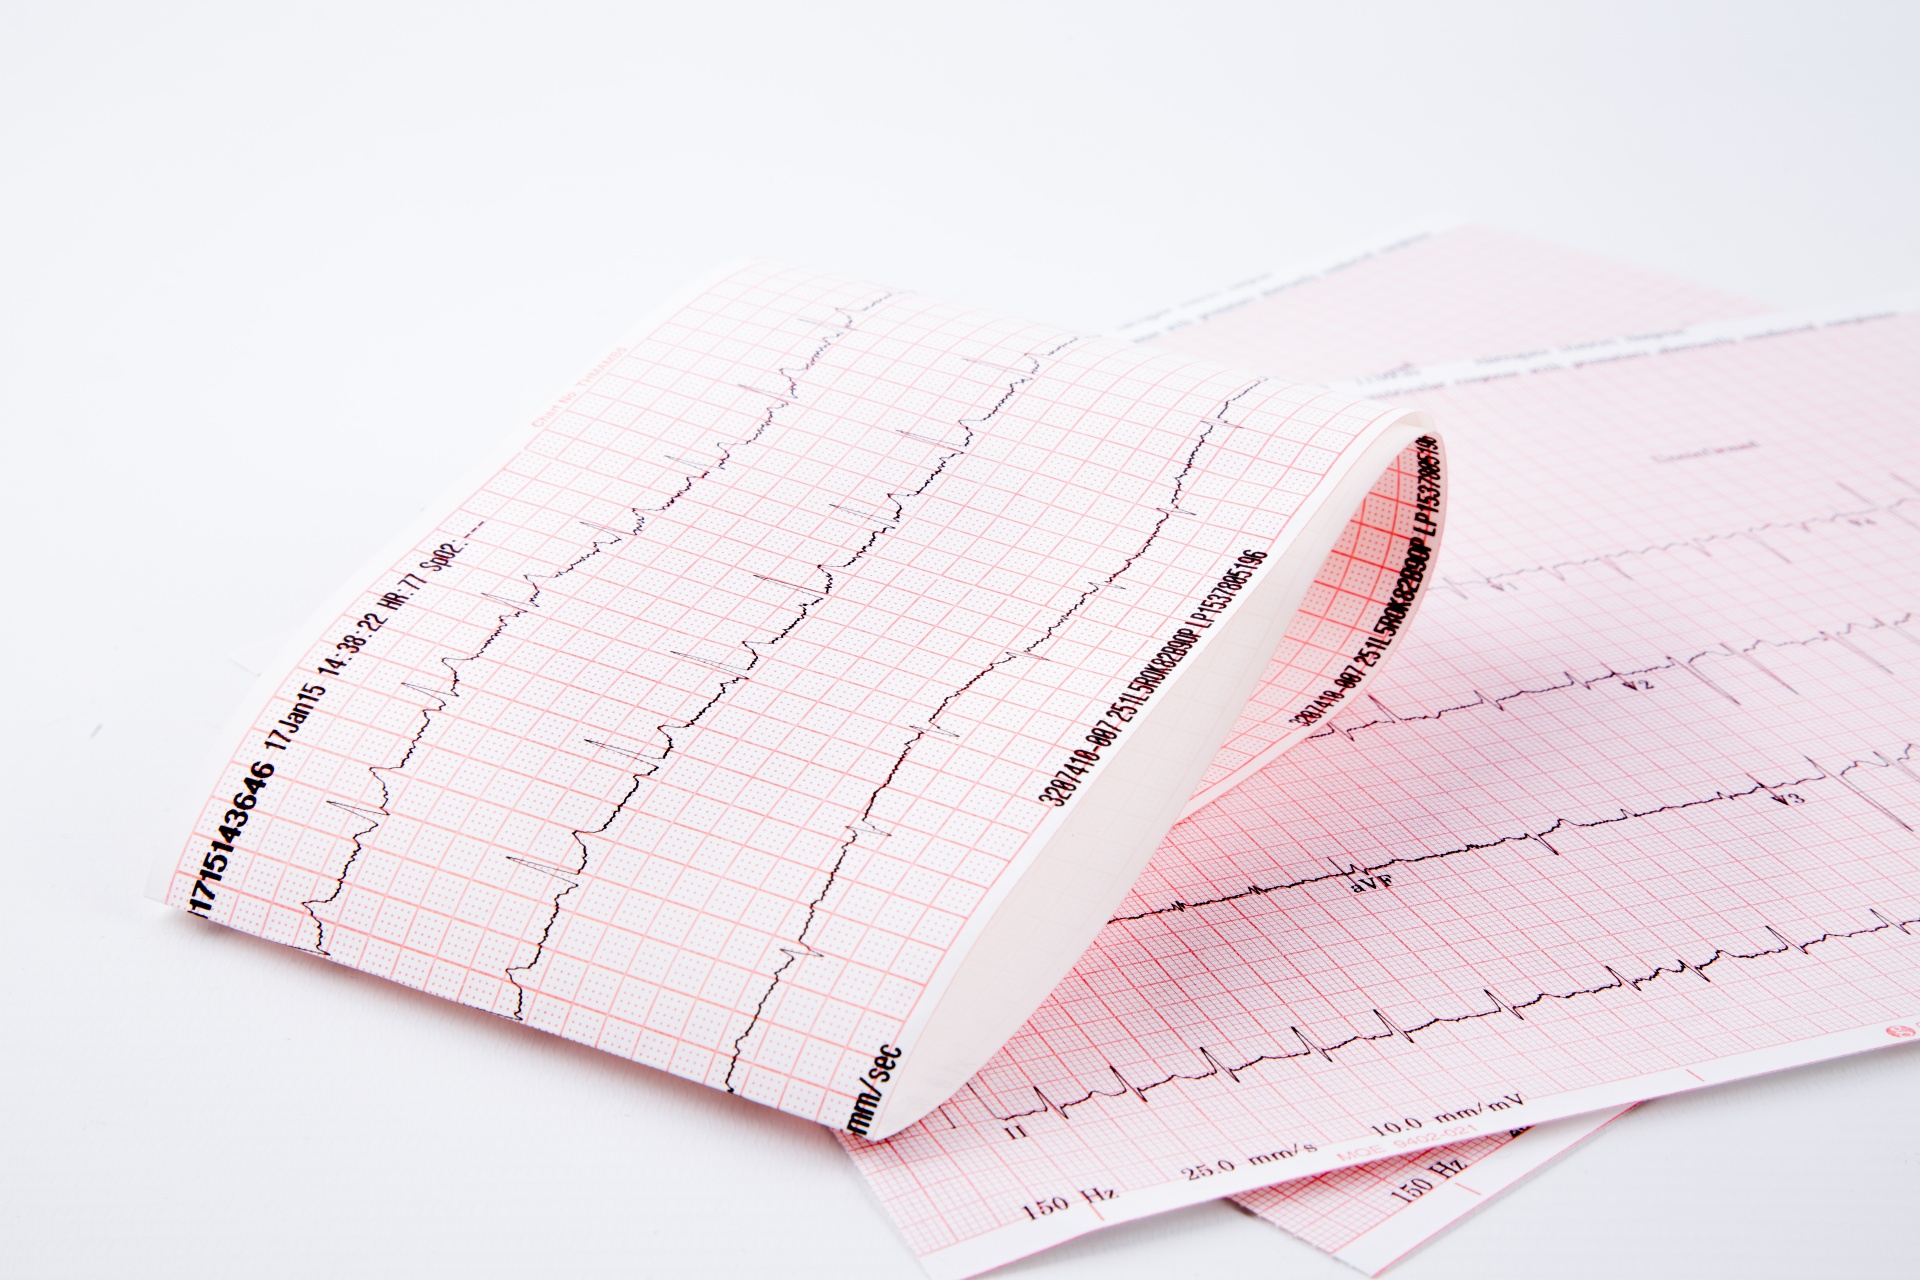 Cardiogram Pulse Trace